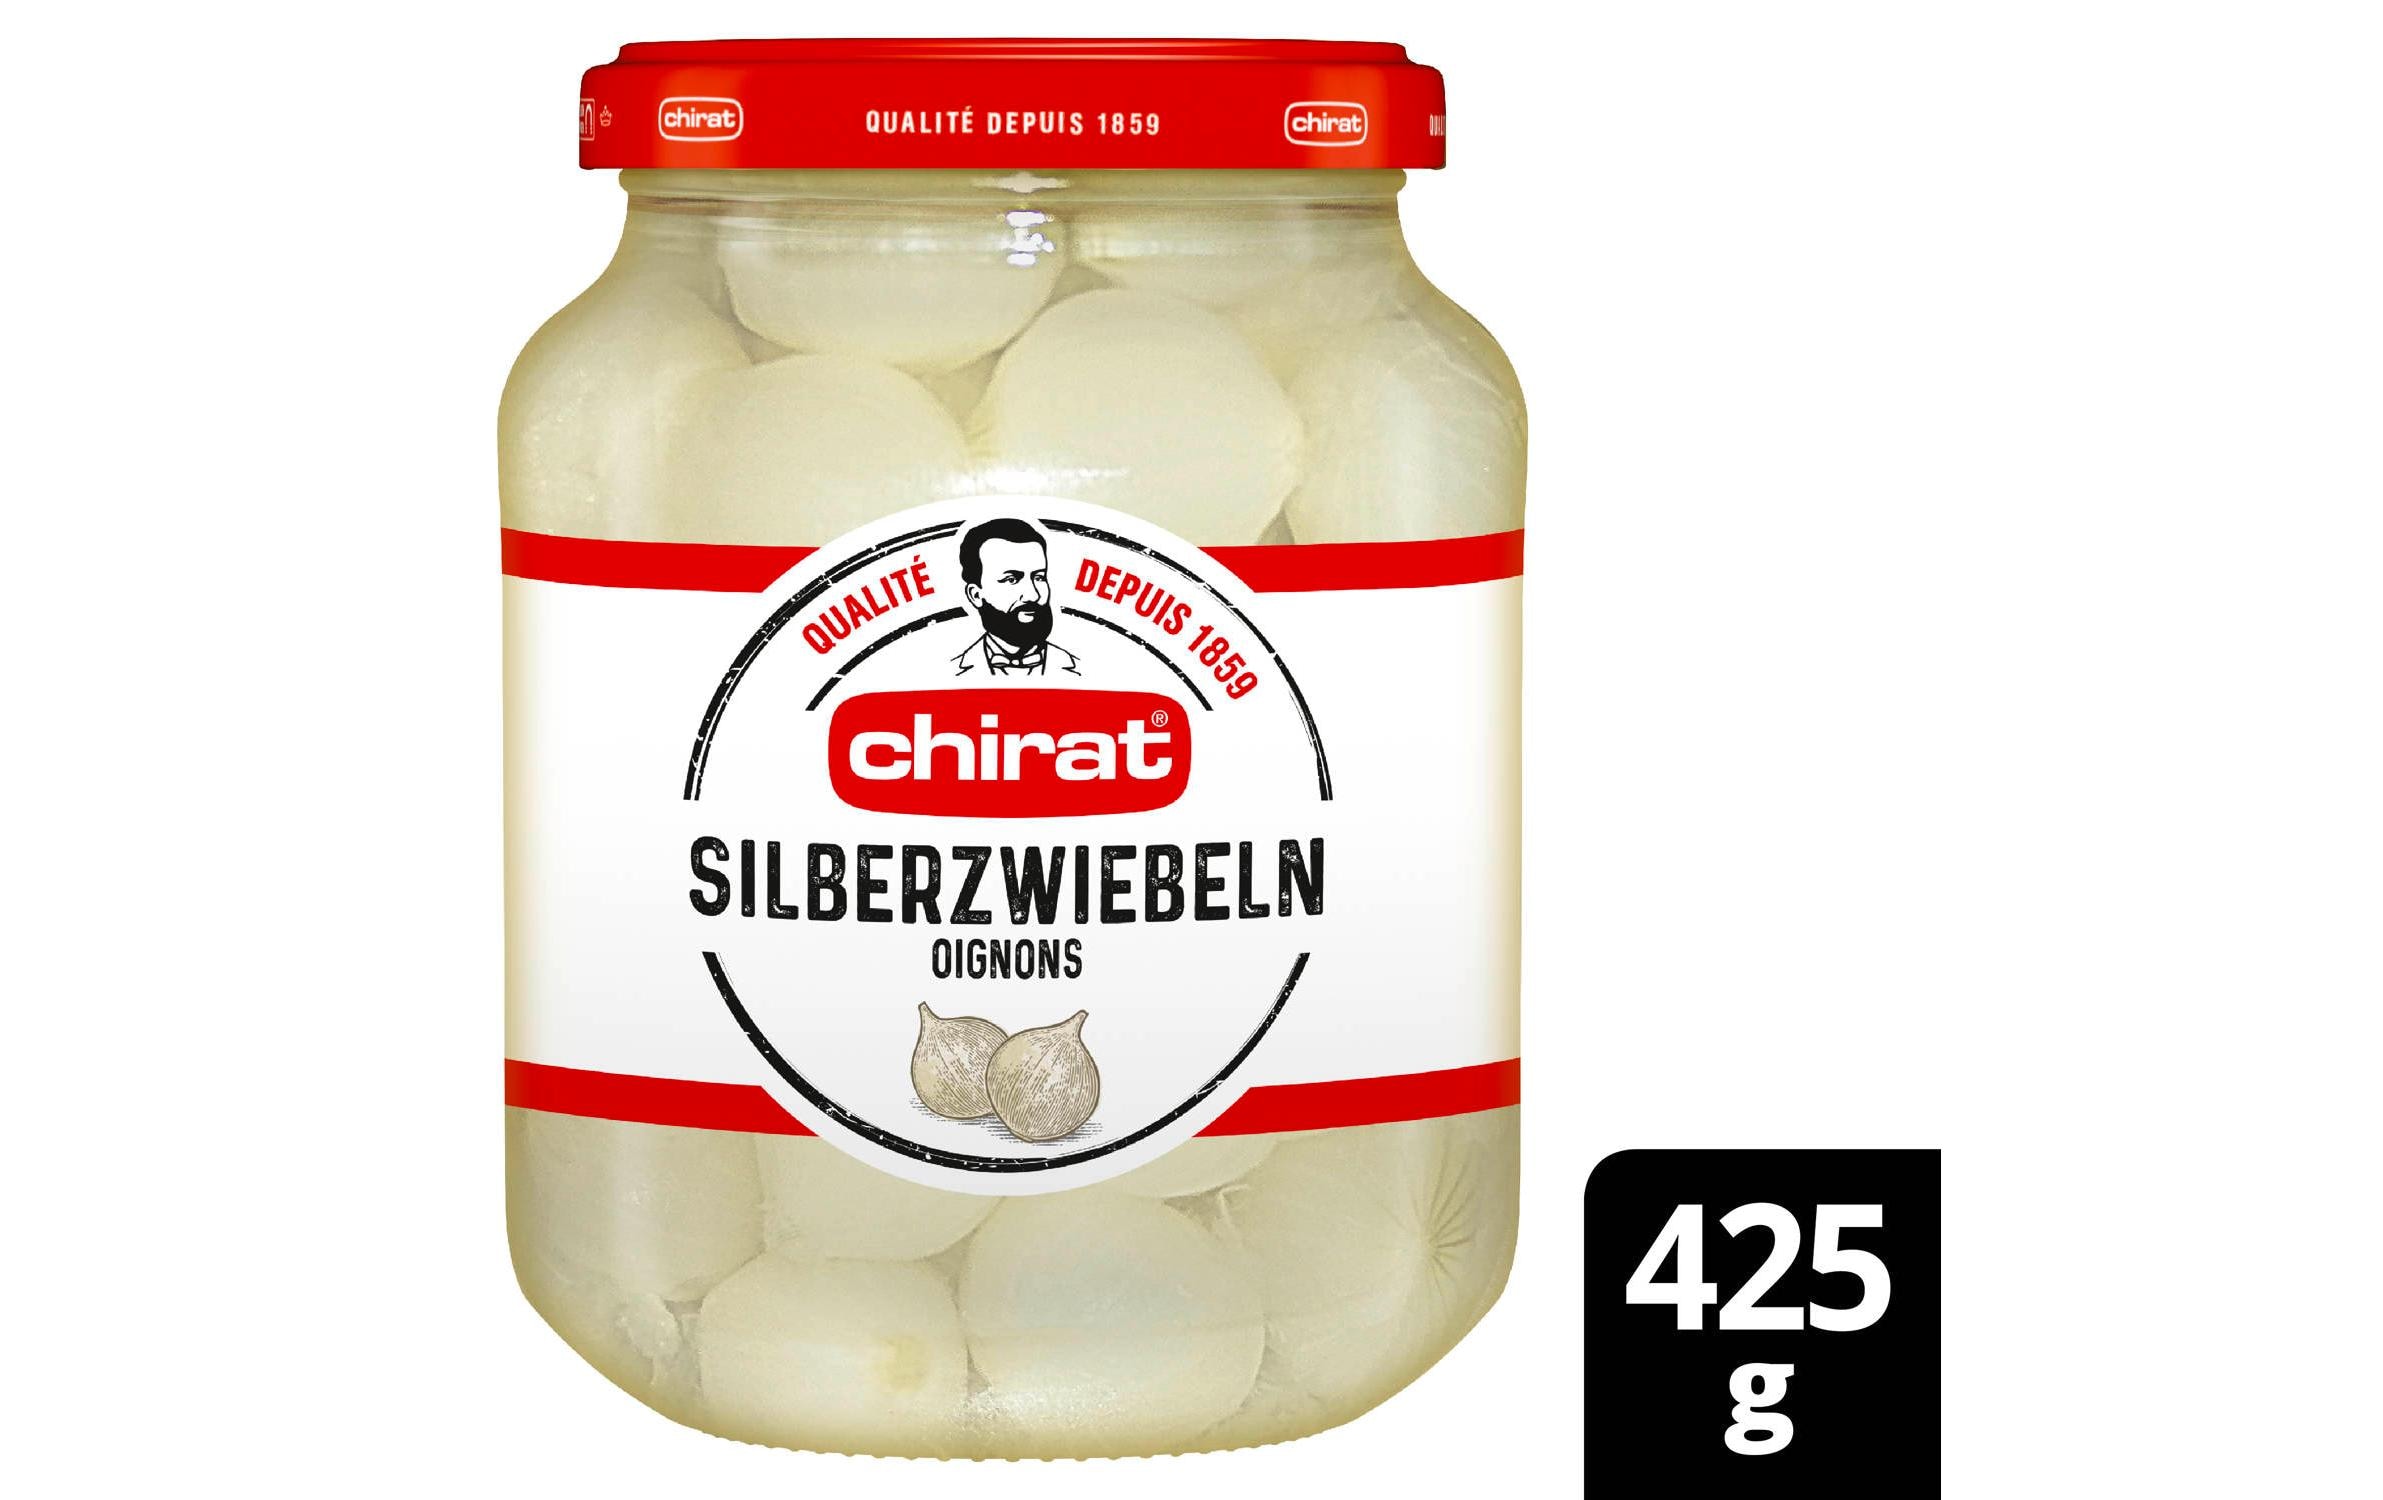 Chirat Silberzwiebeln 425 g